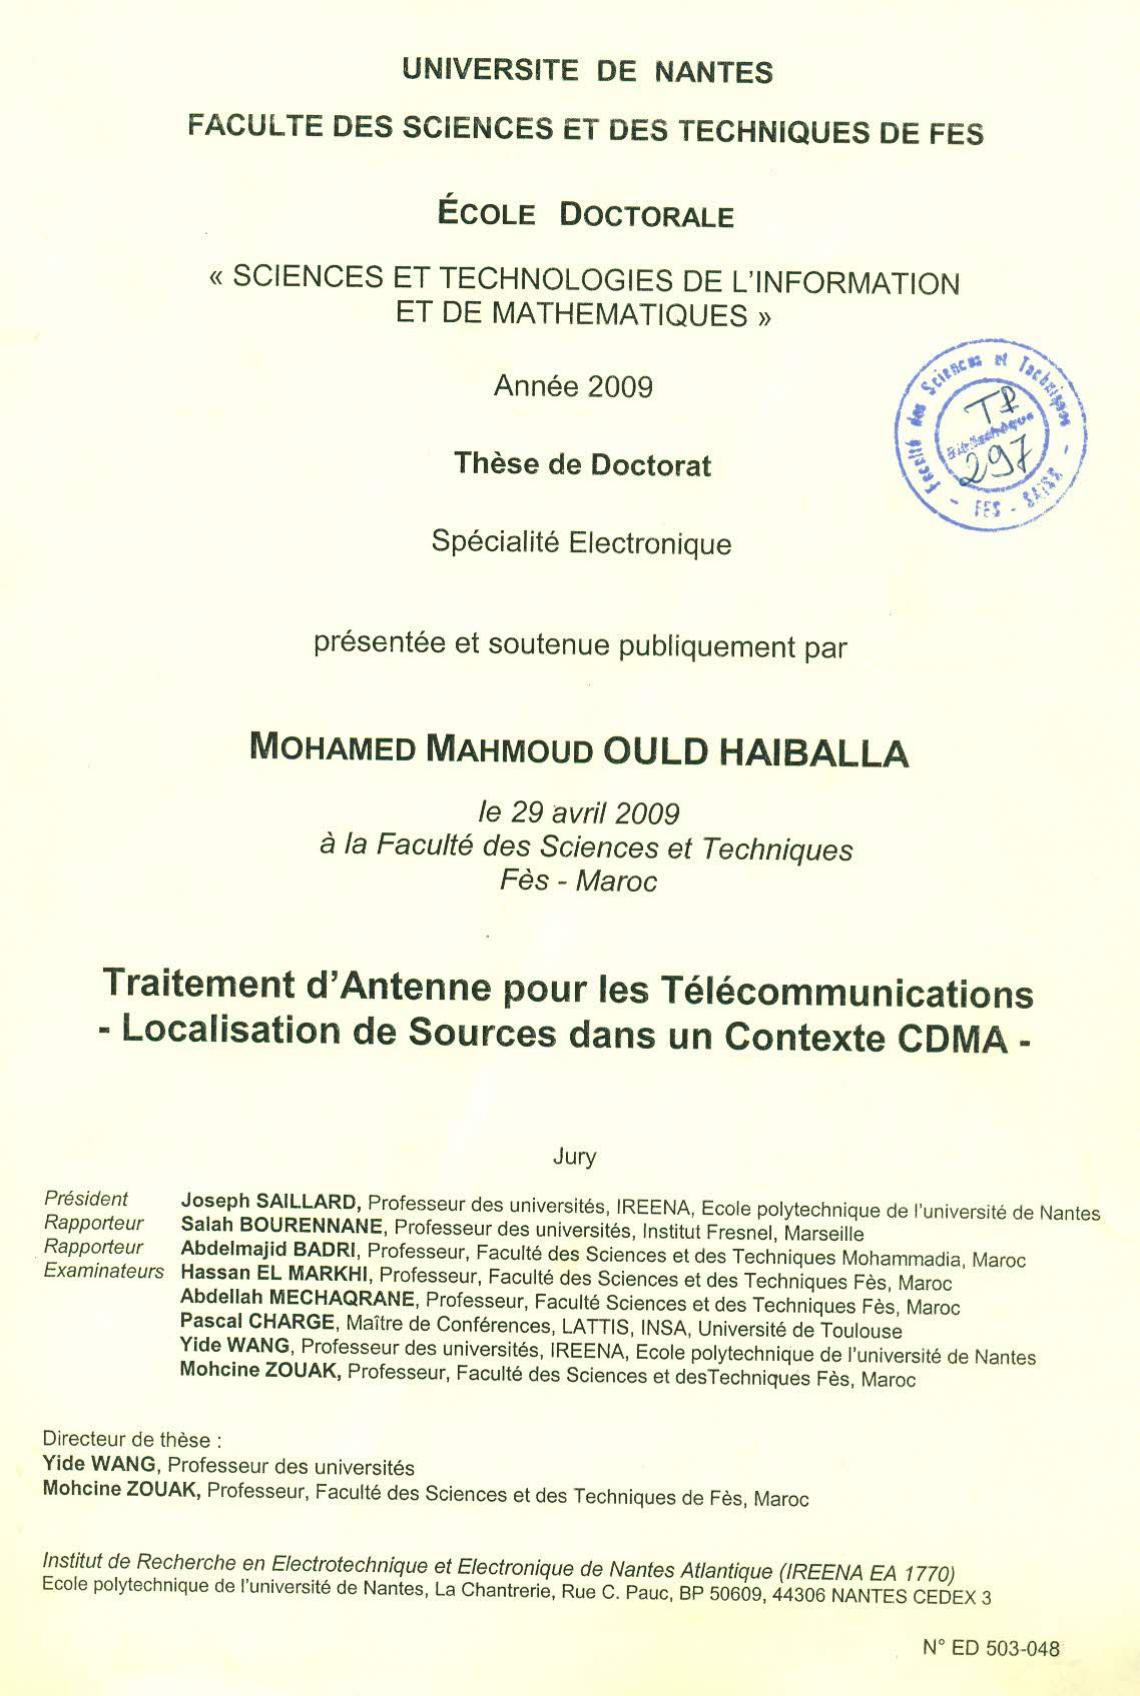 Traitement d'antenne pour les télécommunications, Localisation de sources dans un contexte CDMA